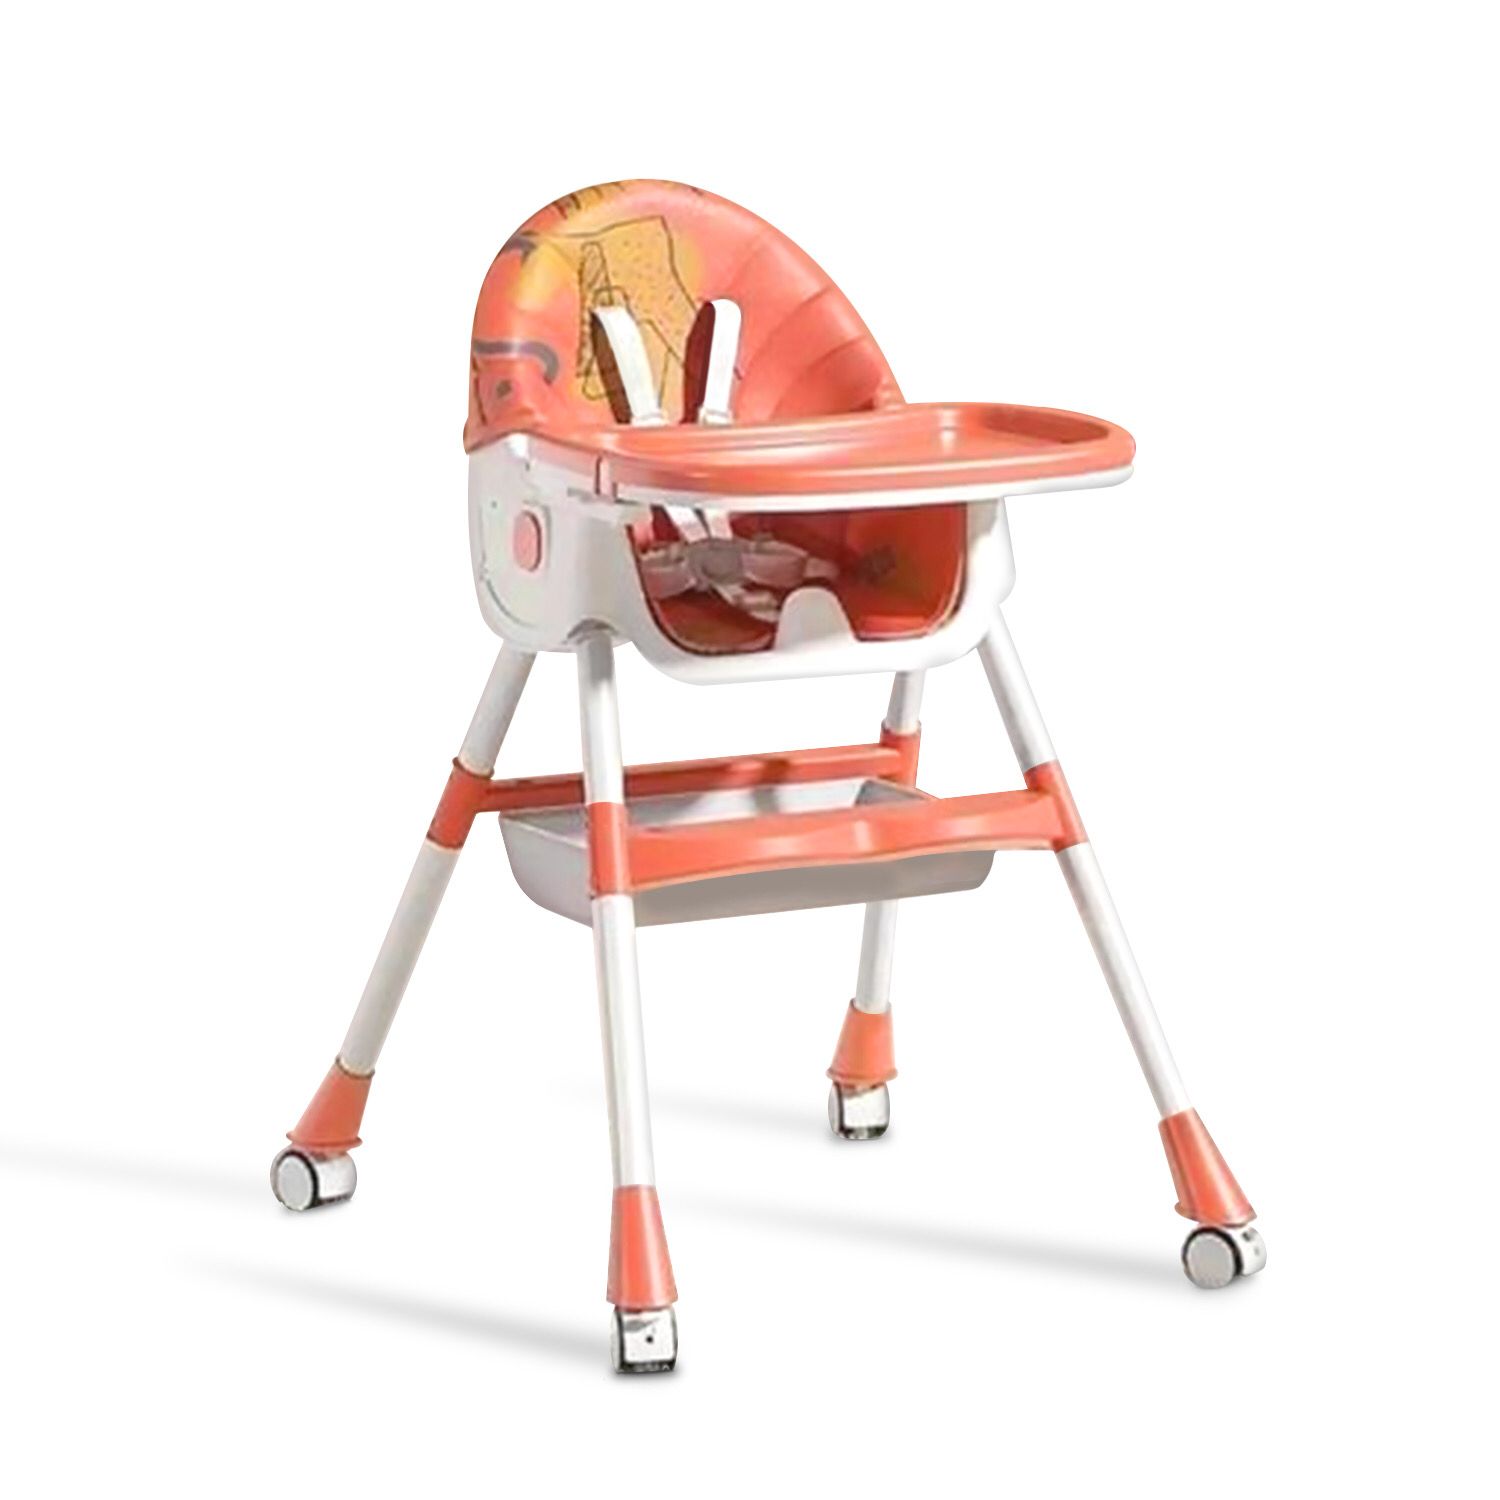 Детский стульчик для кормления Luxmom Q2 оранжевый стульчик для кормления nuovita lembo arancione bianco оранжевый белый